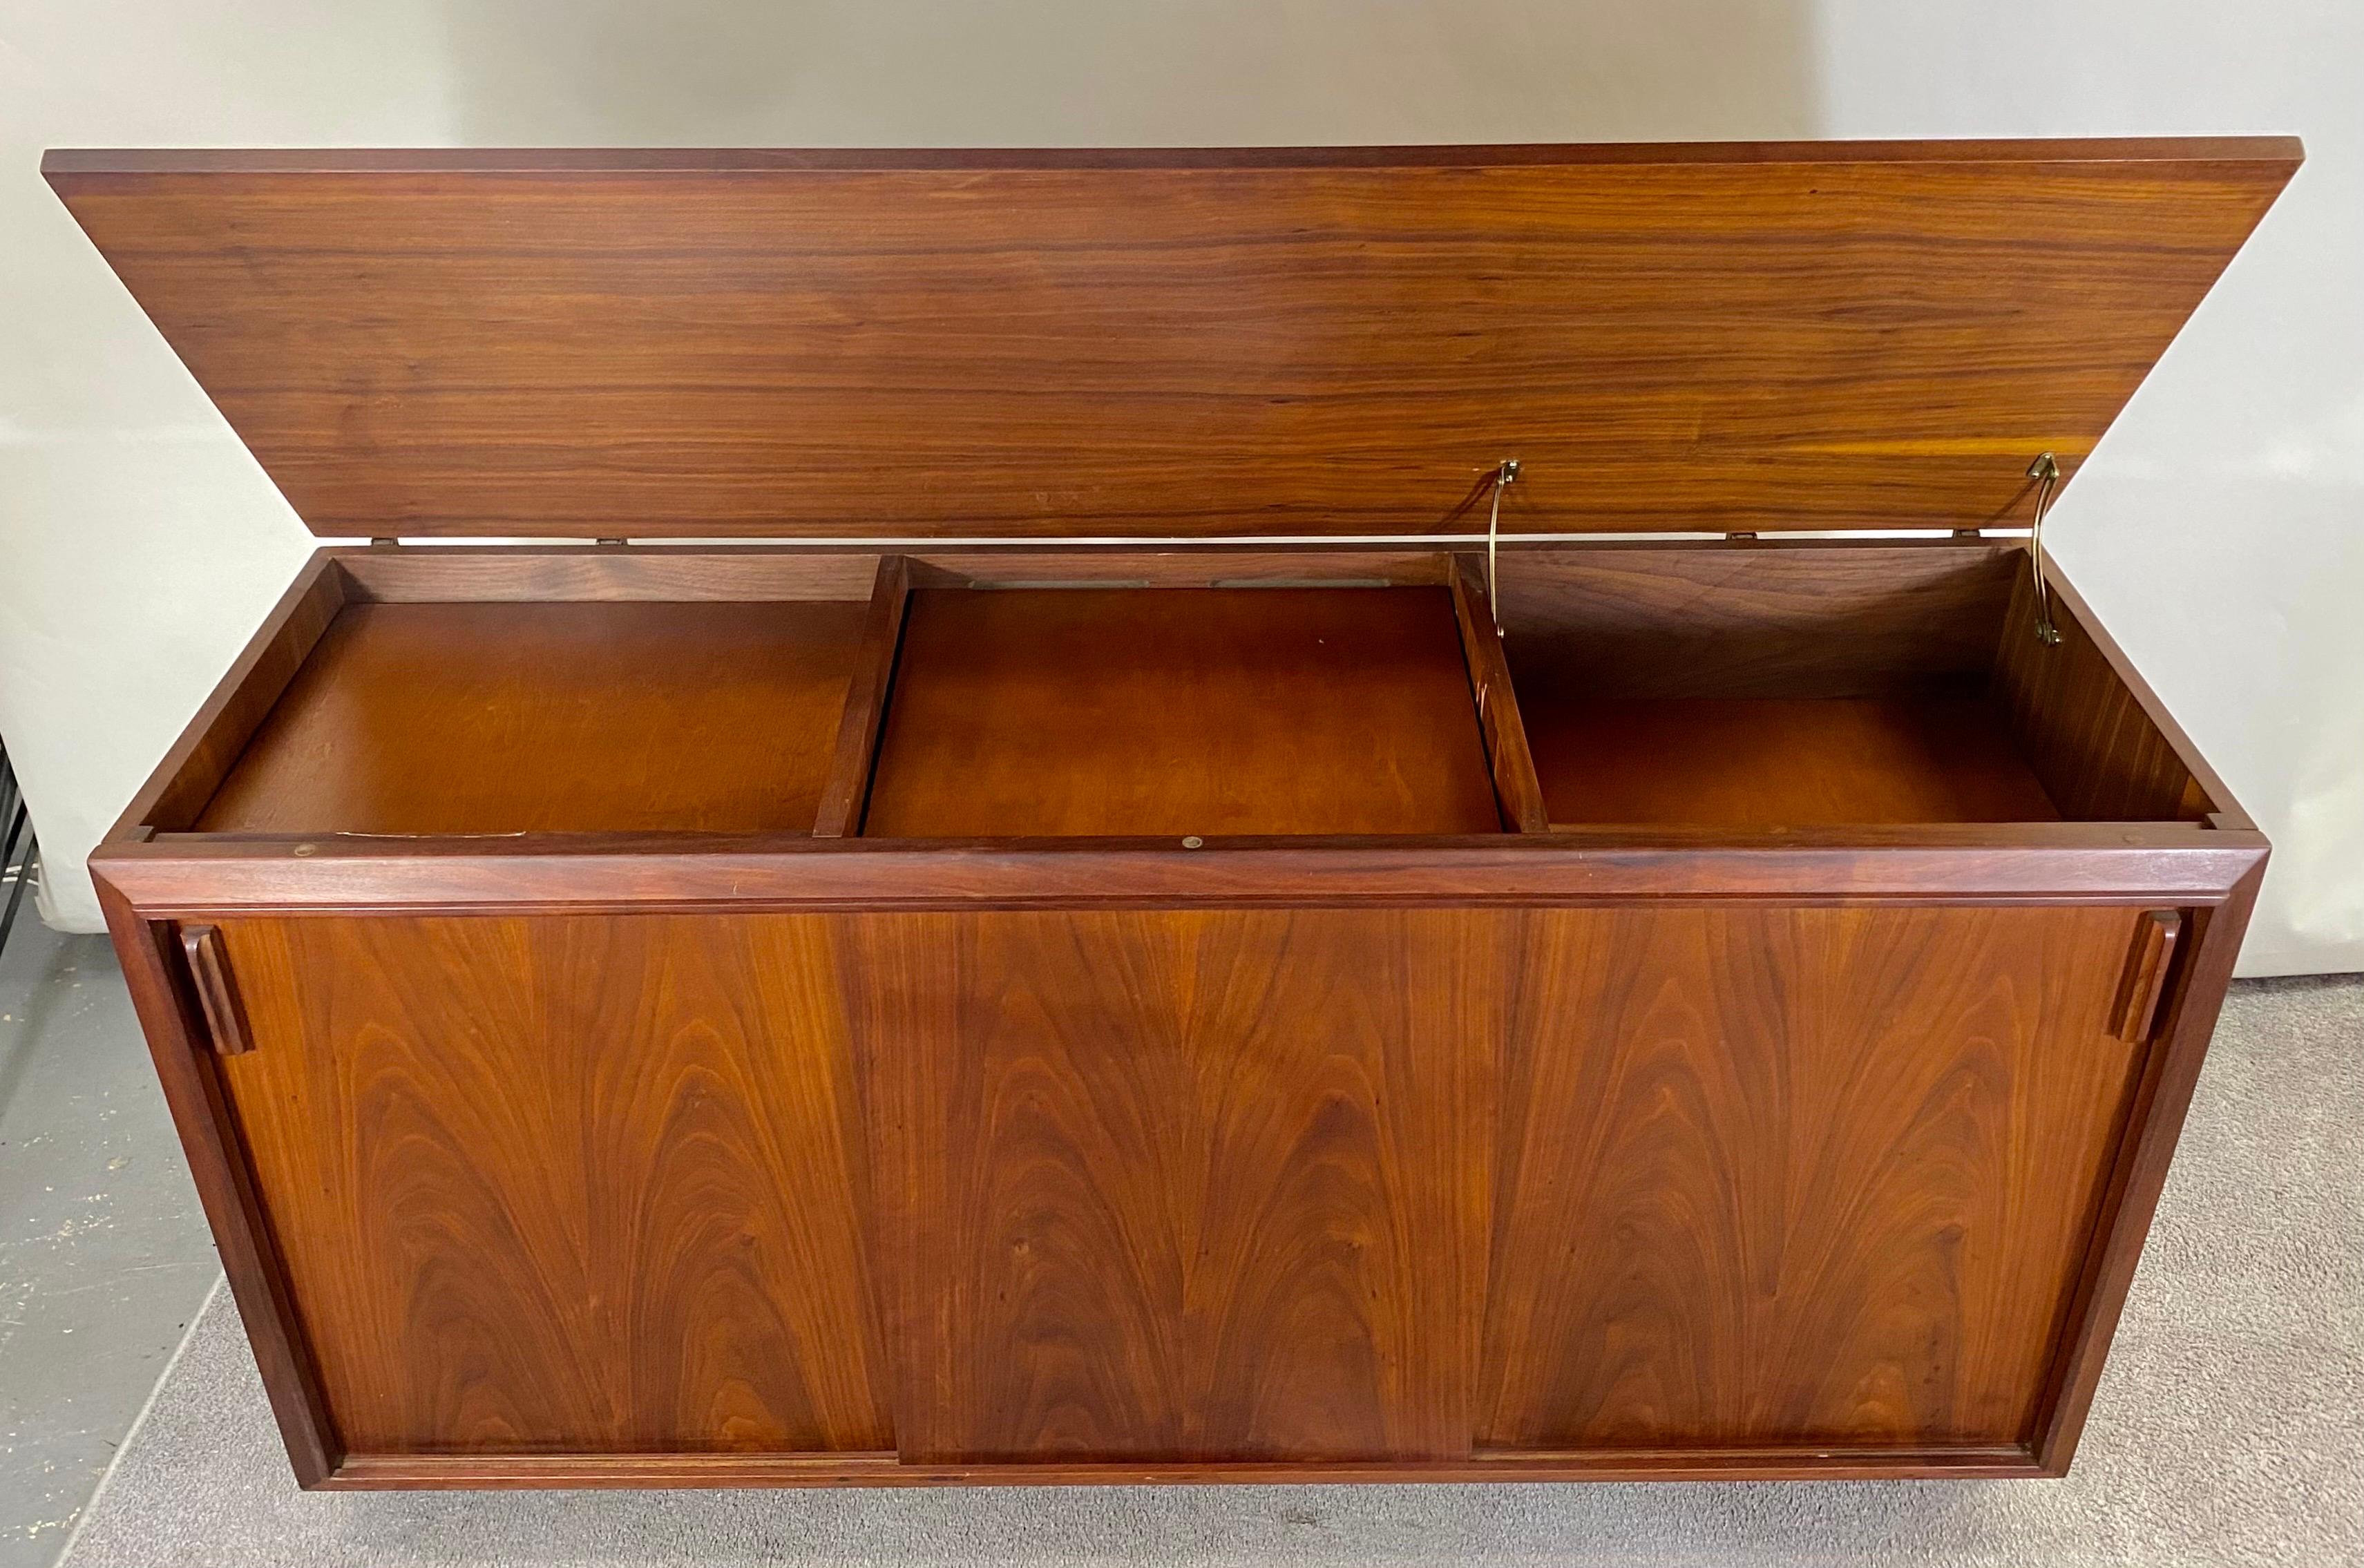 Hochwertiges Sideboard, Kredenz aus der Jahrhundertmitte von Brazilay. Der edle Schrank war ursprünglich eine Stereokonsole und wurde zum Sideboard umgebaut. Das Sideboard Brazilay verfügt über drei Schränke, die Stauraum bieten. Das angehobene